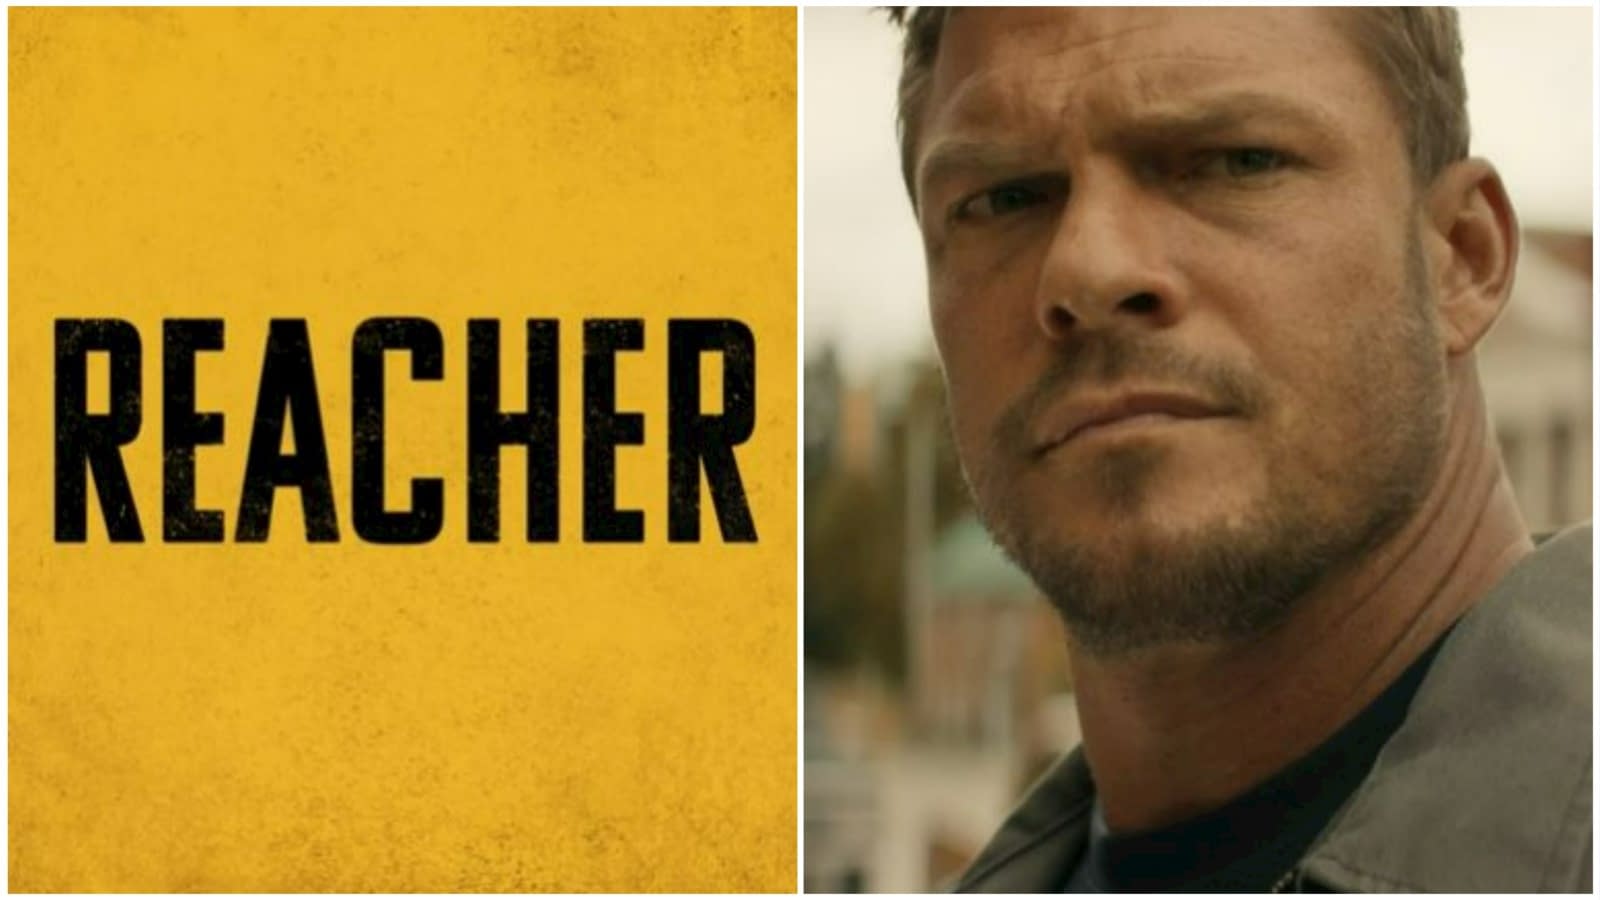 Reacher Season 2 Teaser Confirms Official Trailer This Tuesday